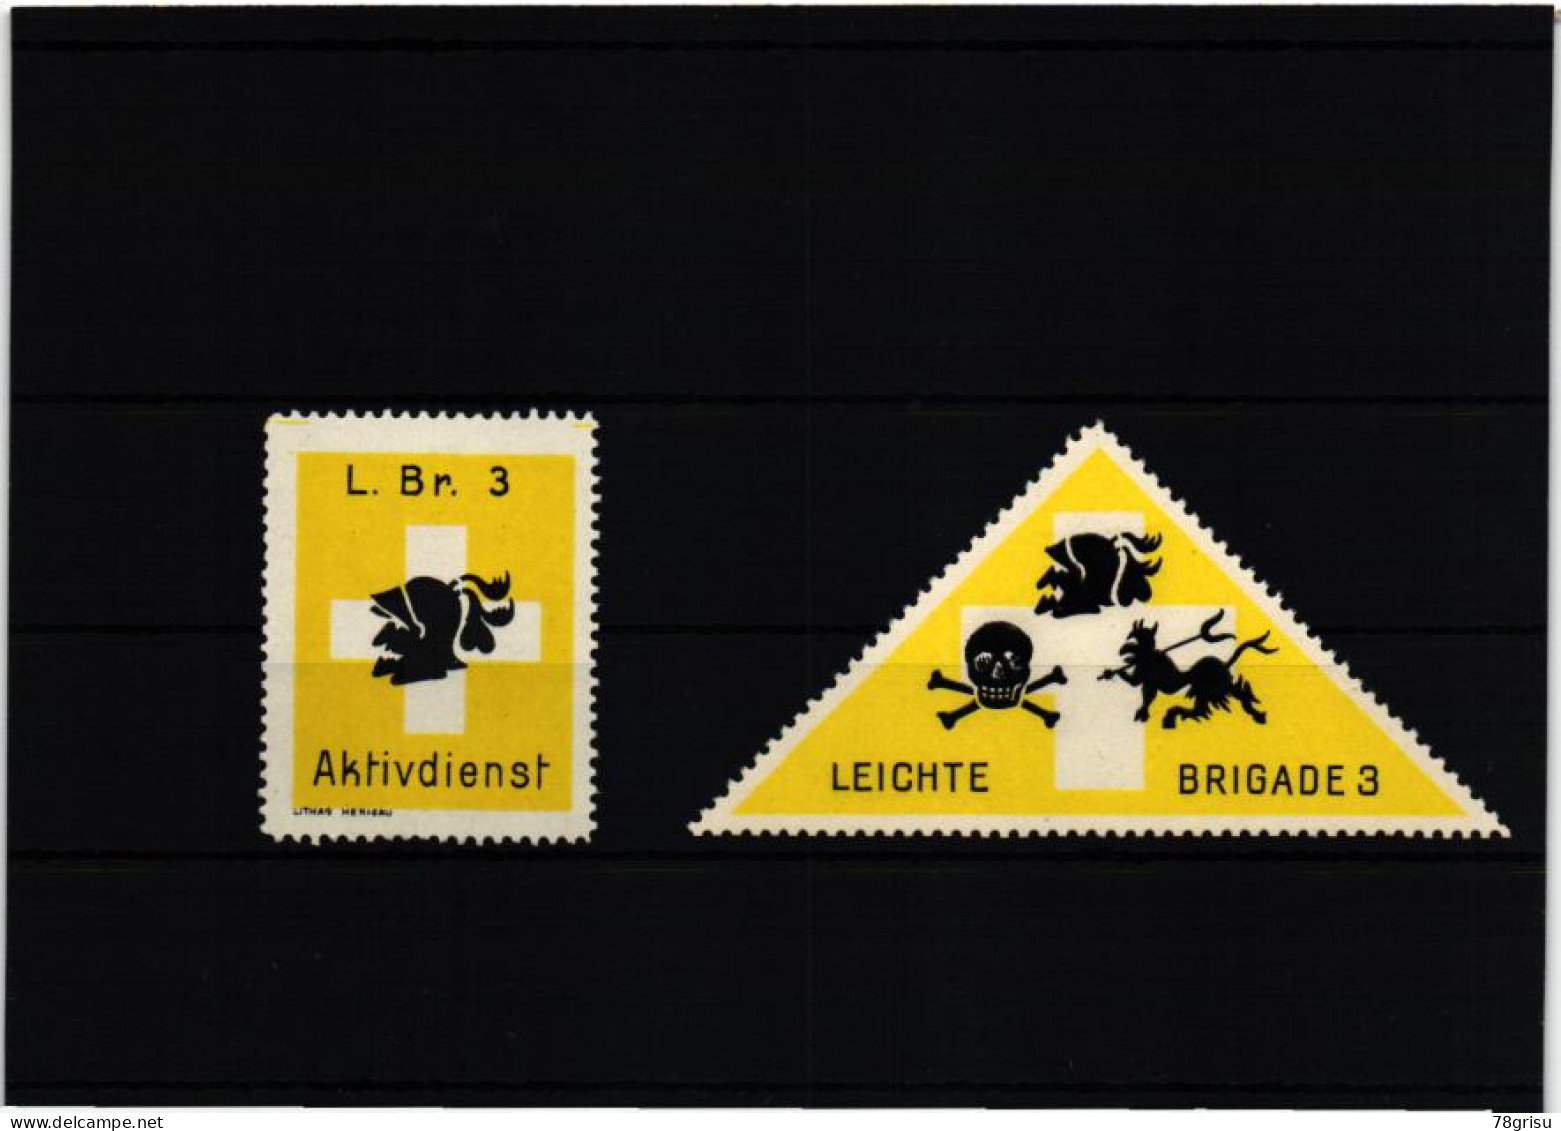 Schweiz Soldatenmarken, LEICHTE BRIGADE 3 L.BR. AKTIVDIENST 1939 1940 - Vignettes